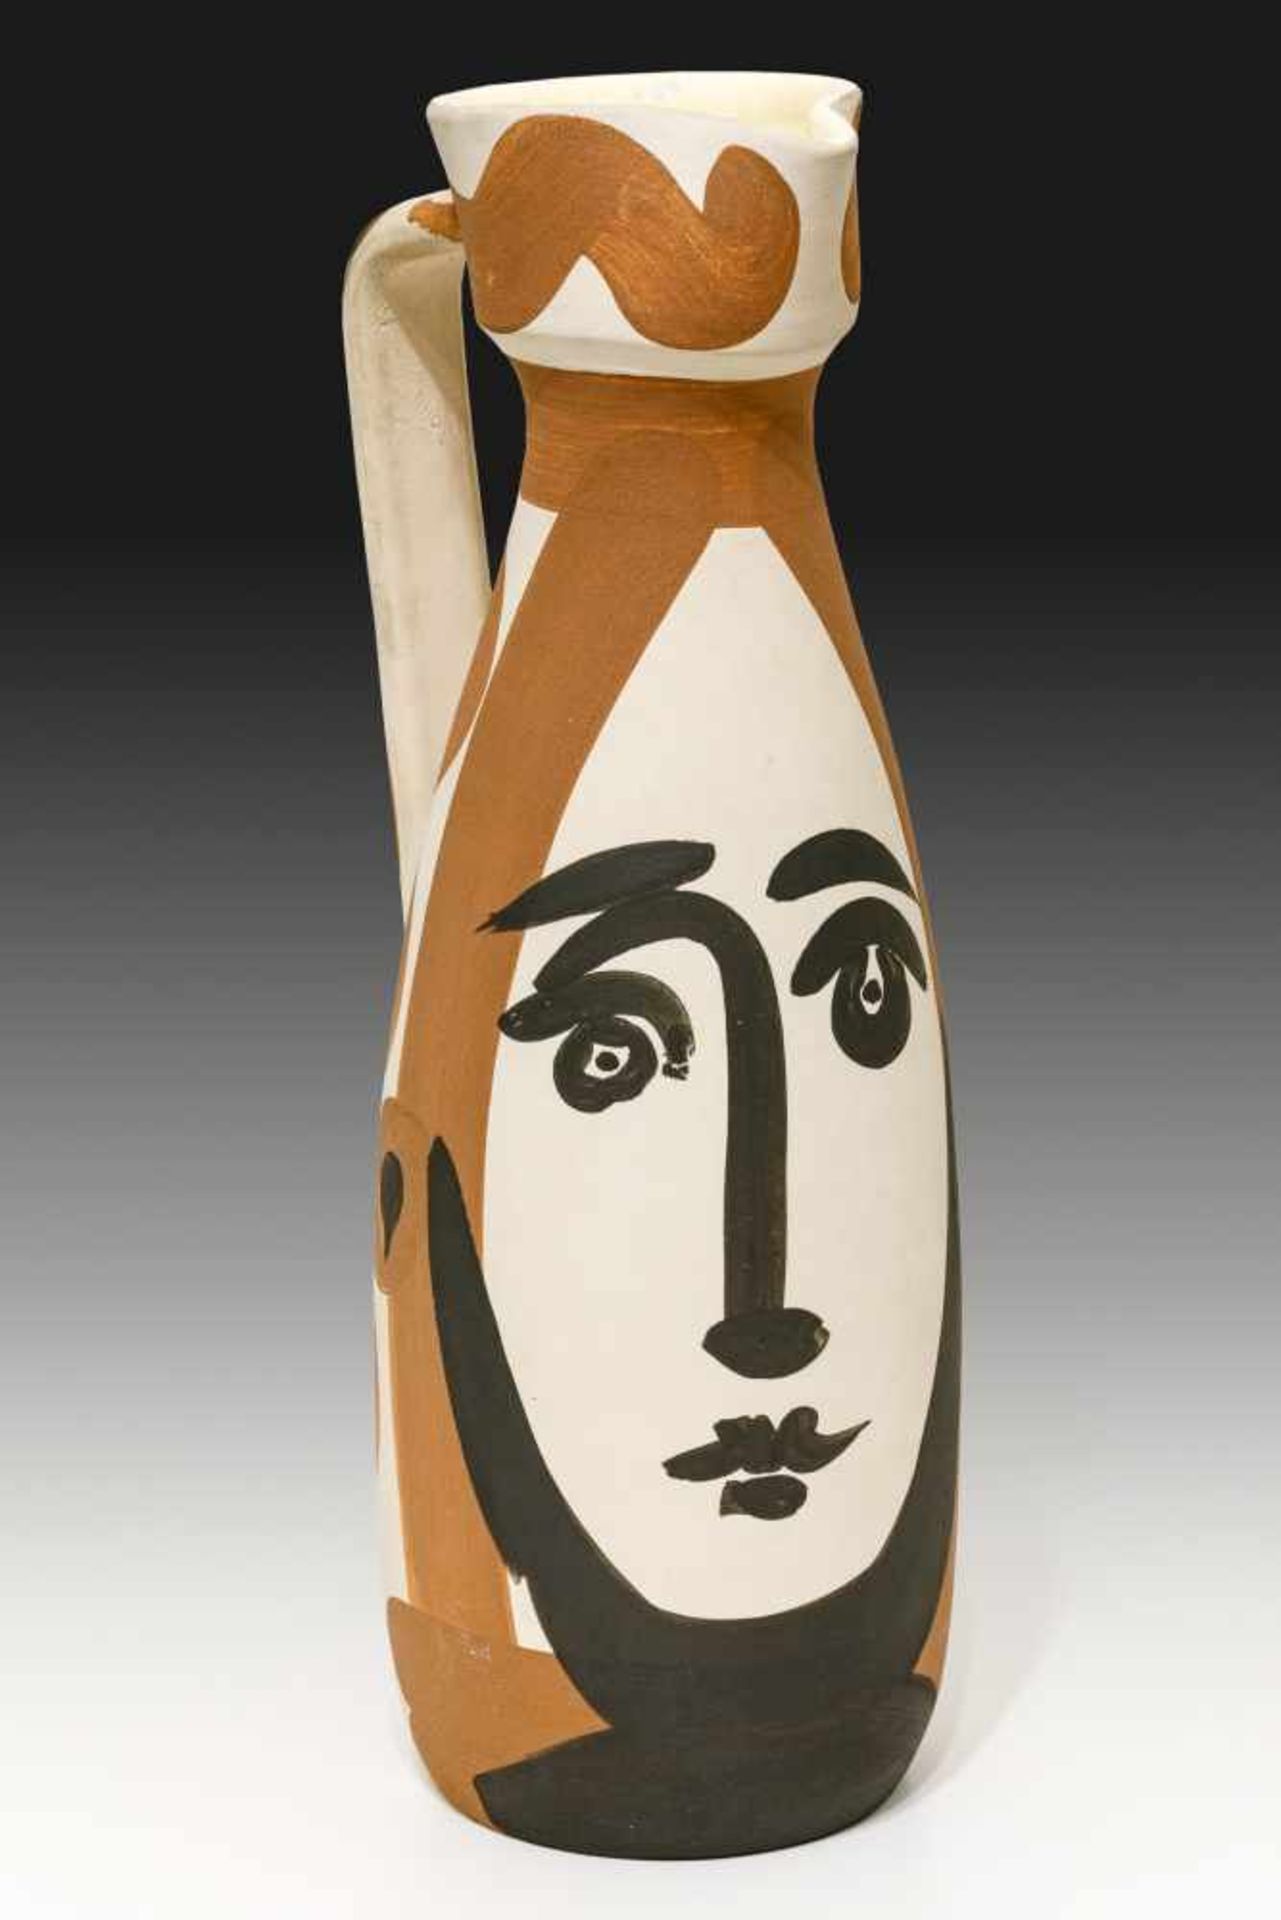 Pablo Ruis Picasso Malaga 1881 - 1973 Mougins Face Keramik bemalt und innen glasiert / ceramic